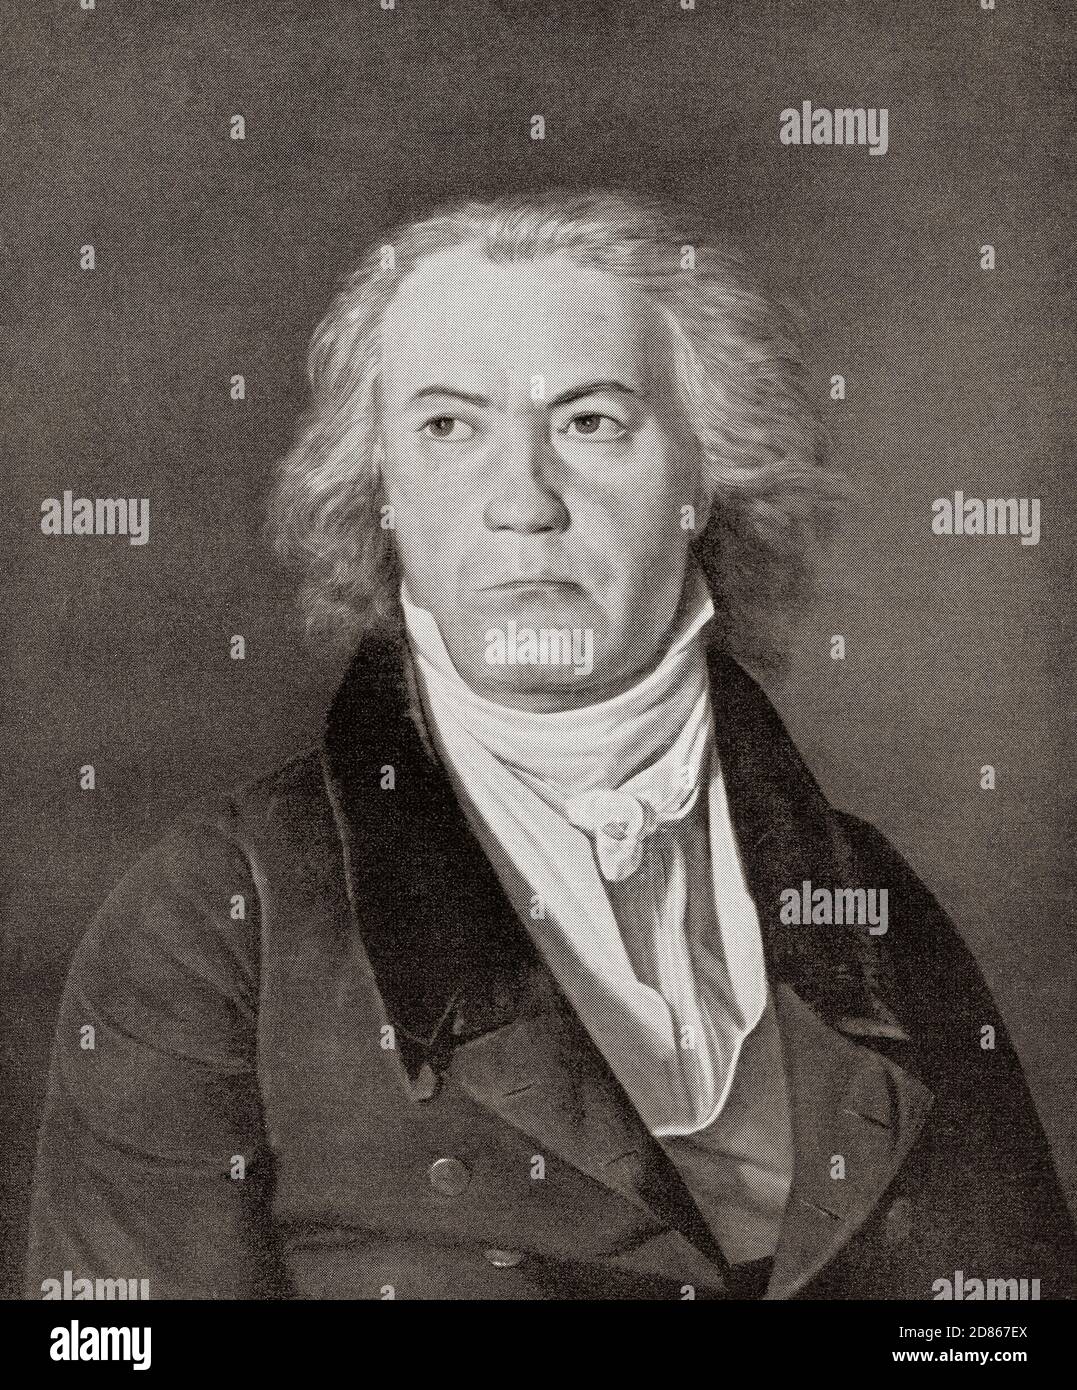 Ludwig van Beethoven, 1770 – 1827, hier im Alter von 53 Jahren zu sehen. Deutscher Komponist und Pianist. Aus Ludwig van Beethoven, 1770 - 1827, sein Leben in Bildern Stockfoto